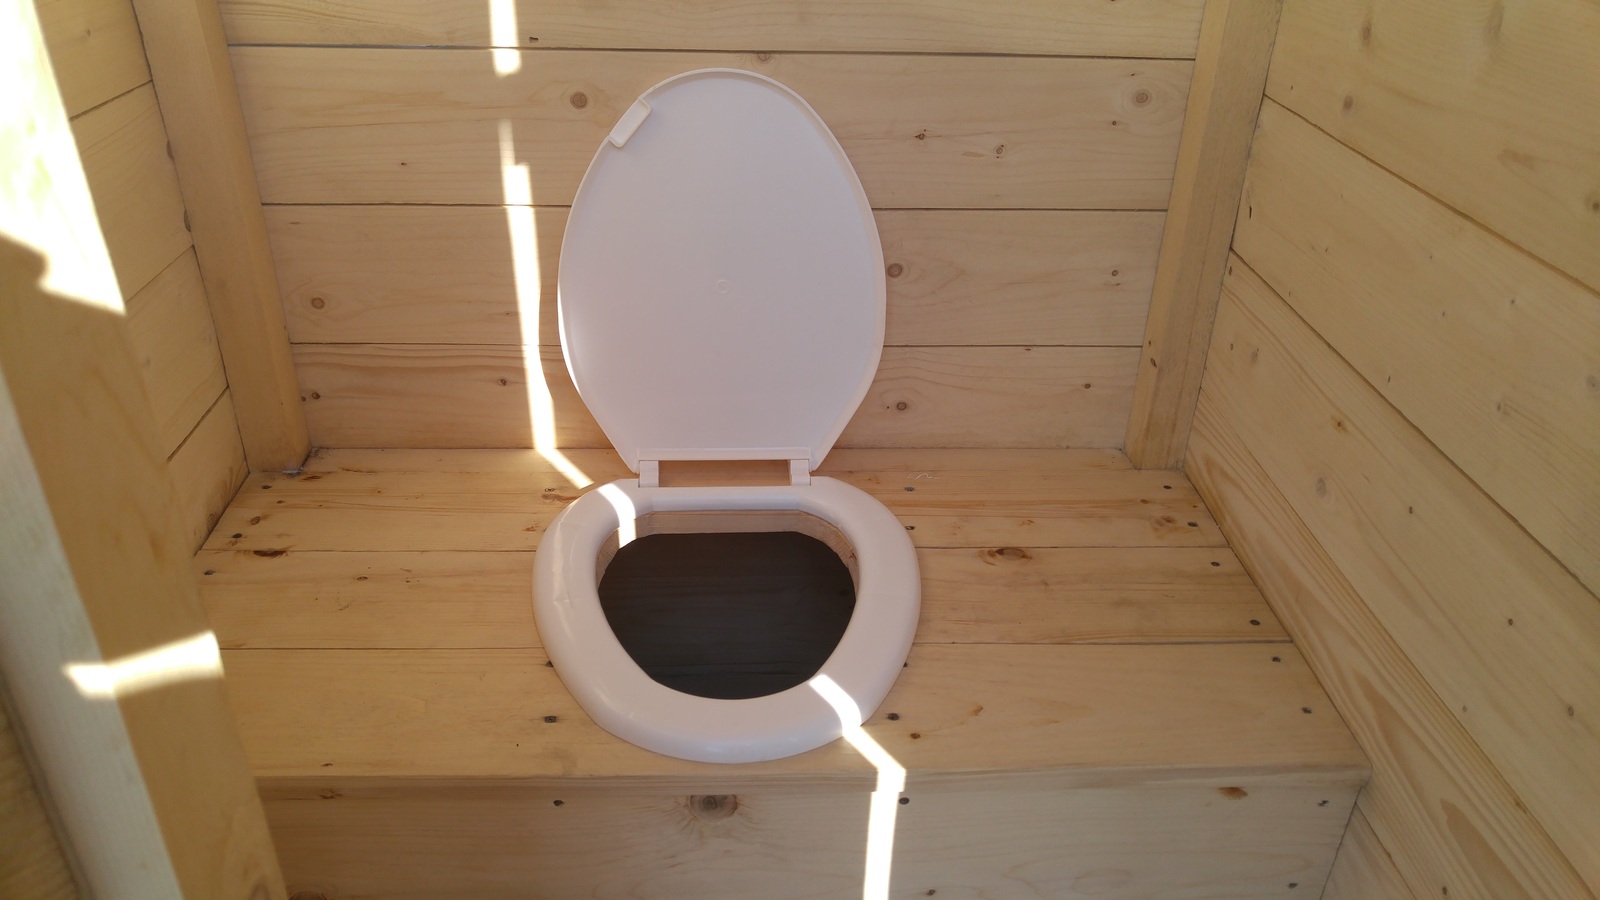 размеры стульчика для дачного туалета